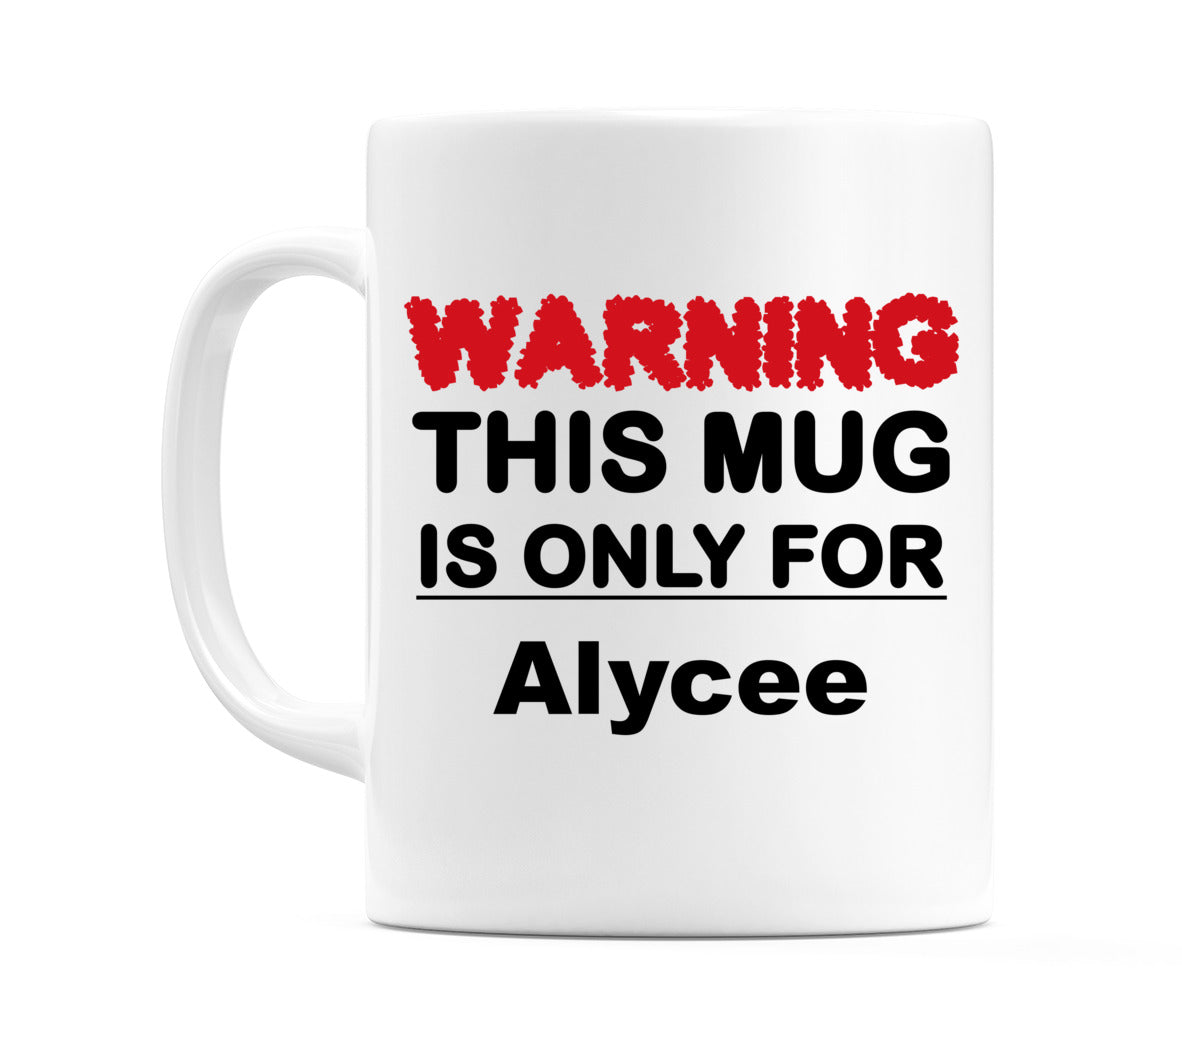 Warning This Mug is ONLY for Alycee Mug